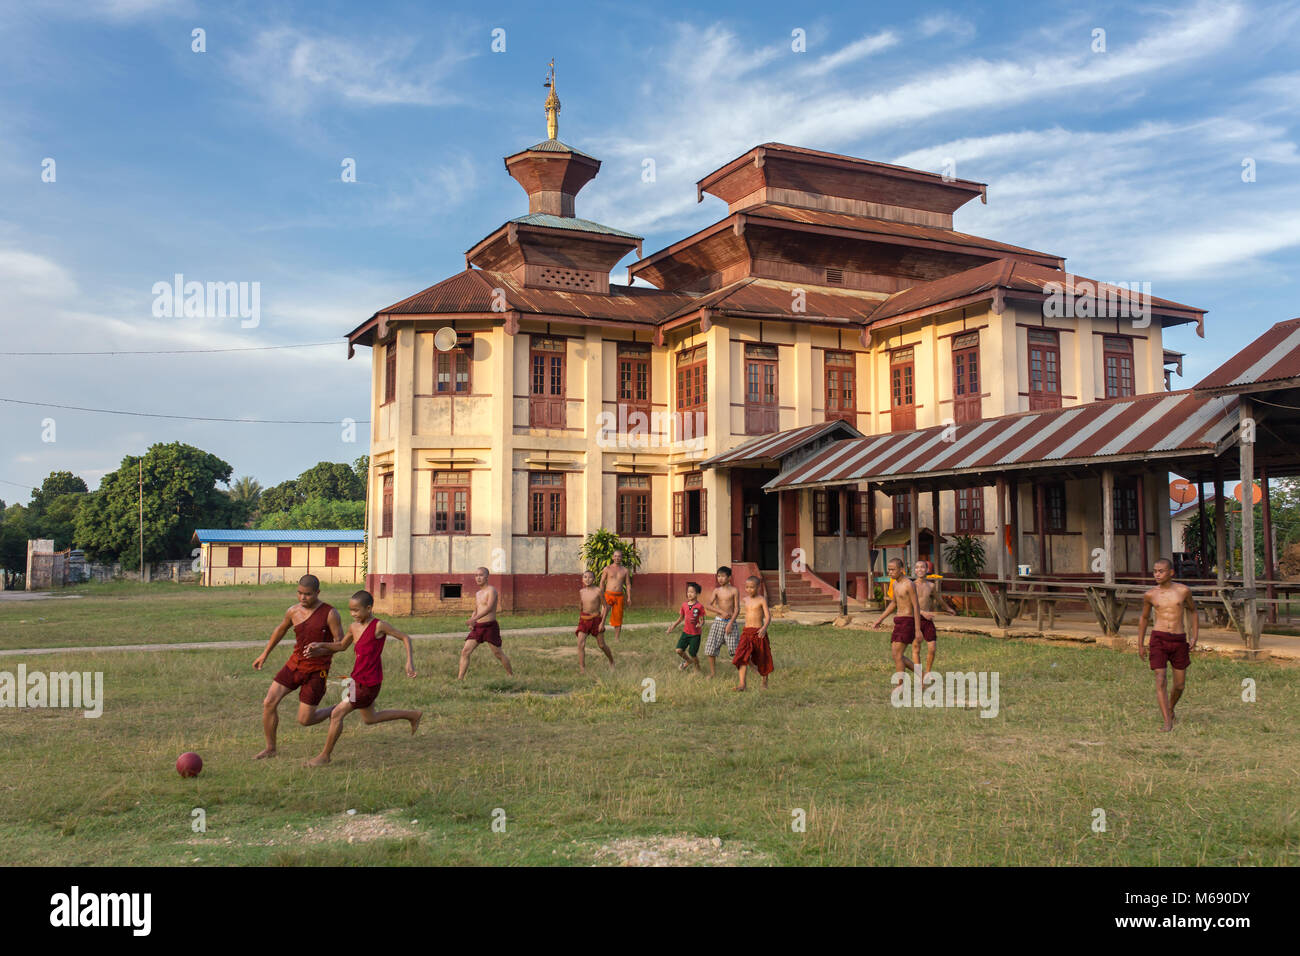 Hsipaw, Myanmar - Ottobre 7, 2016: birmani non identificato i monaci buddisti gioca a calcio nei pressi del monastero in Hsipaw, Birmania Foto Stock